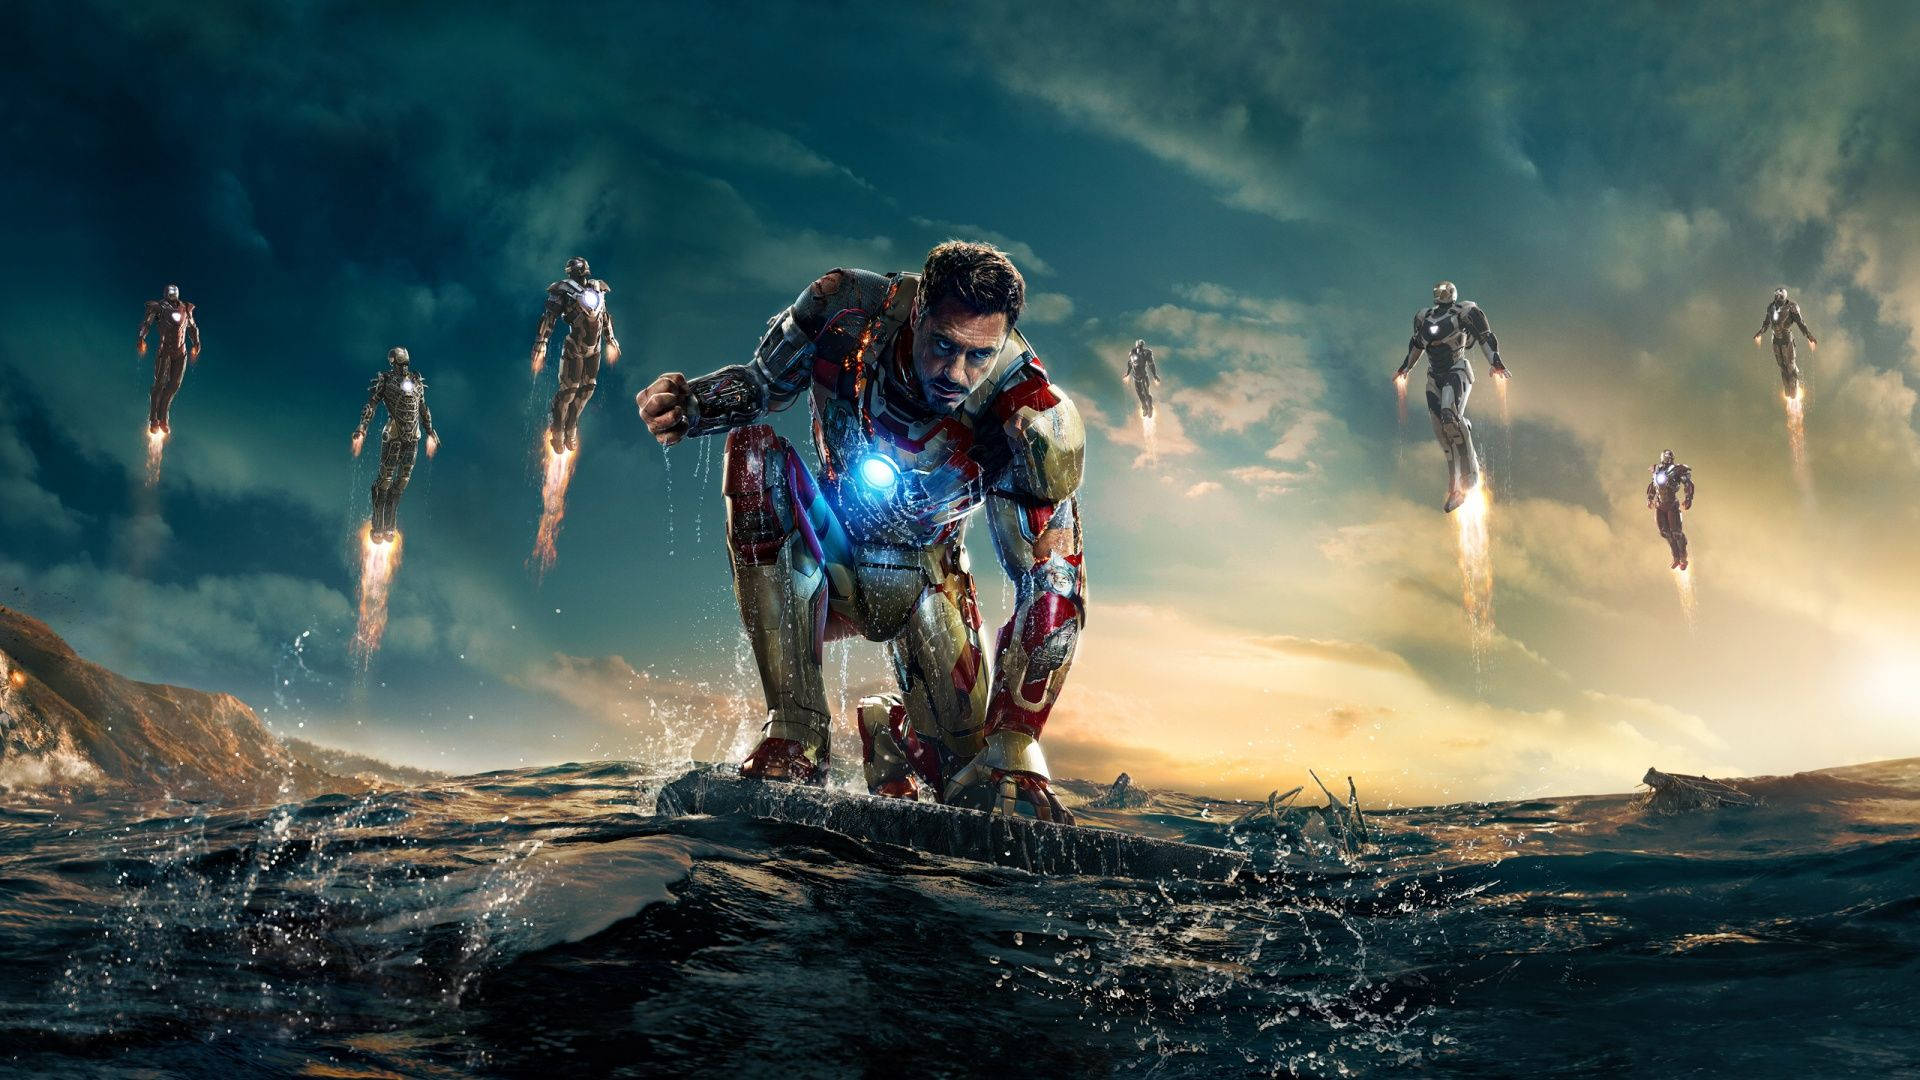 Best Iron Man 3 Scene Background